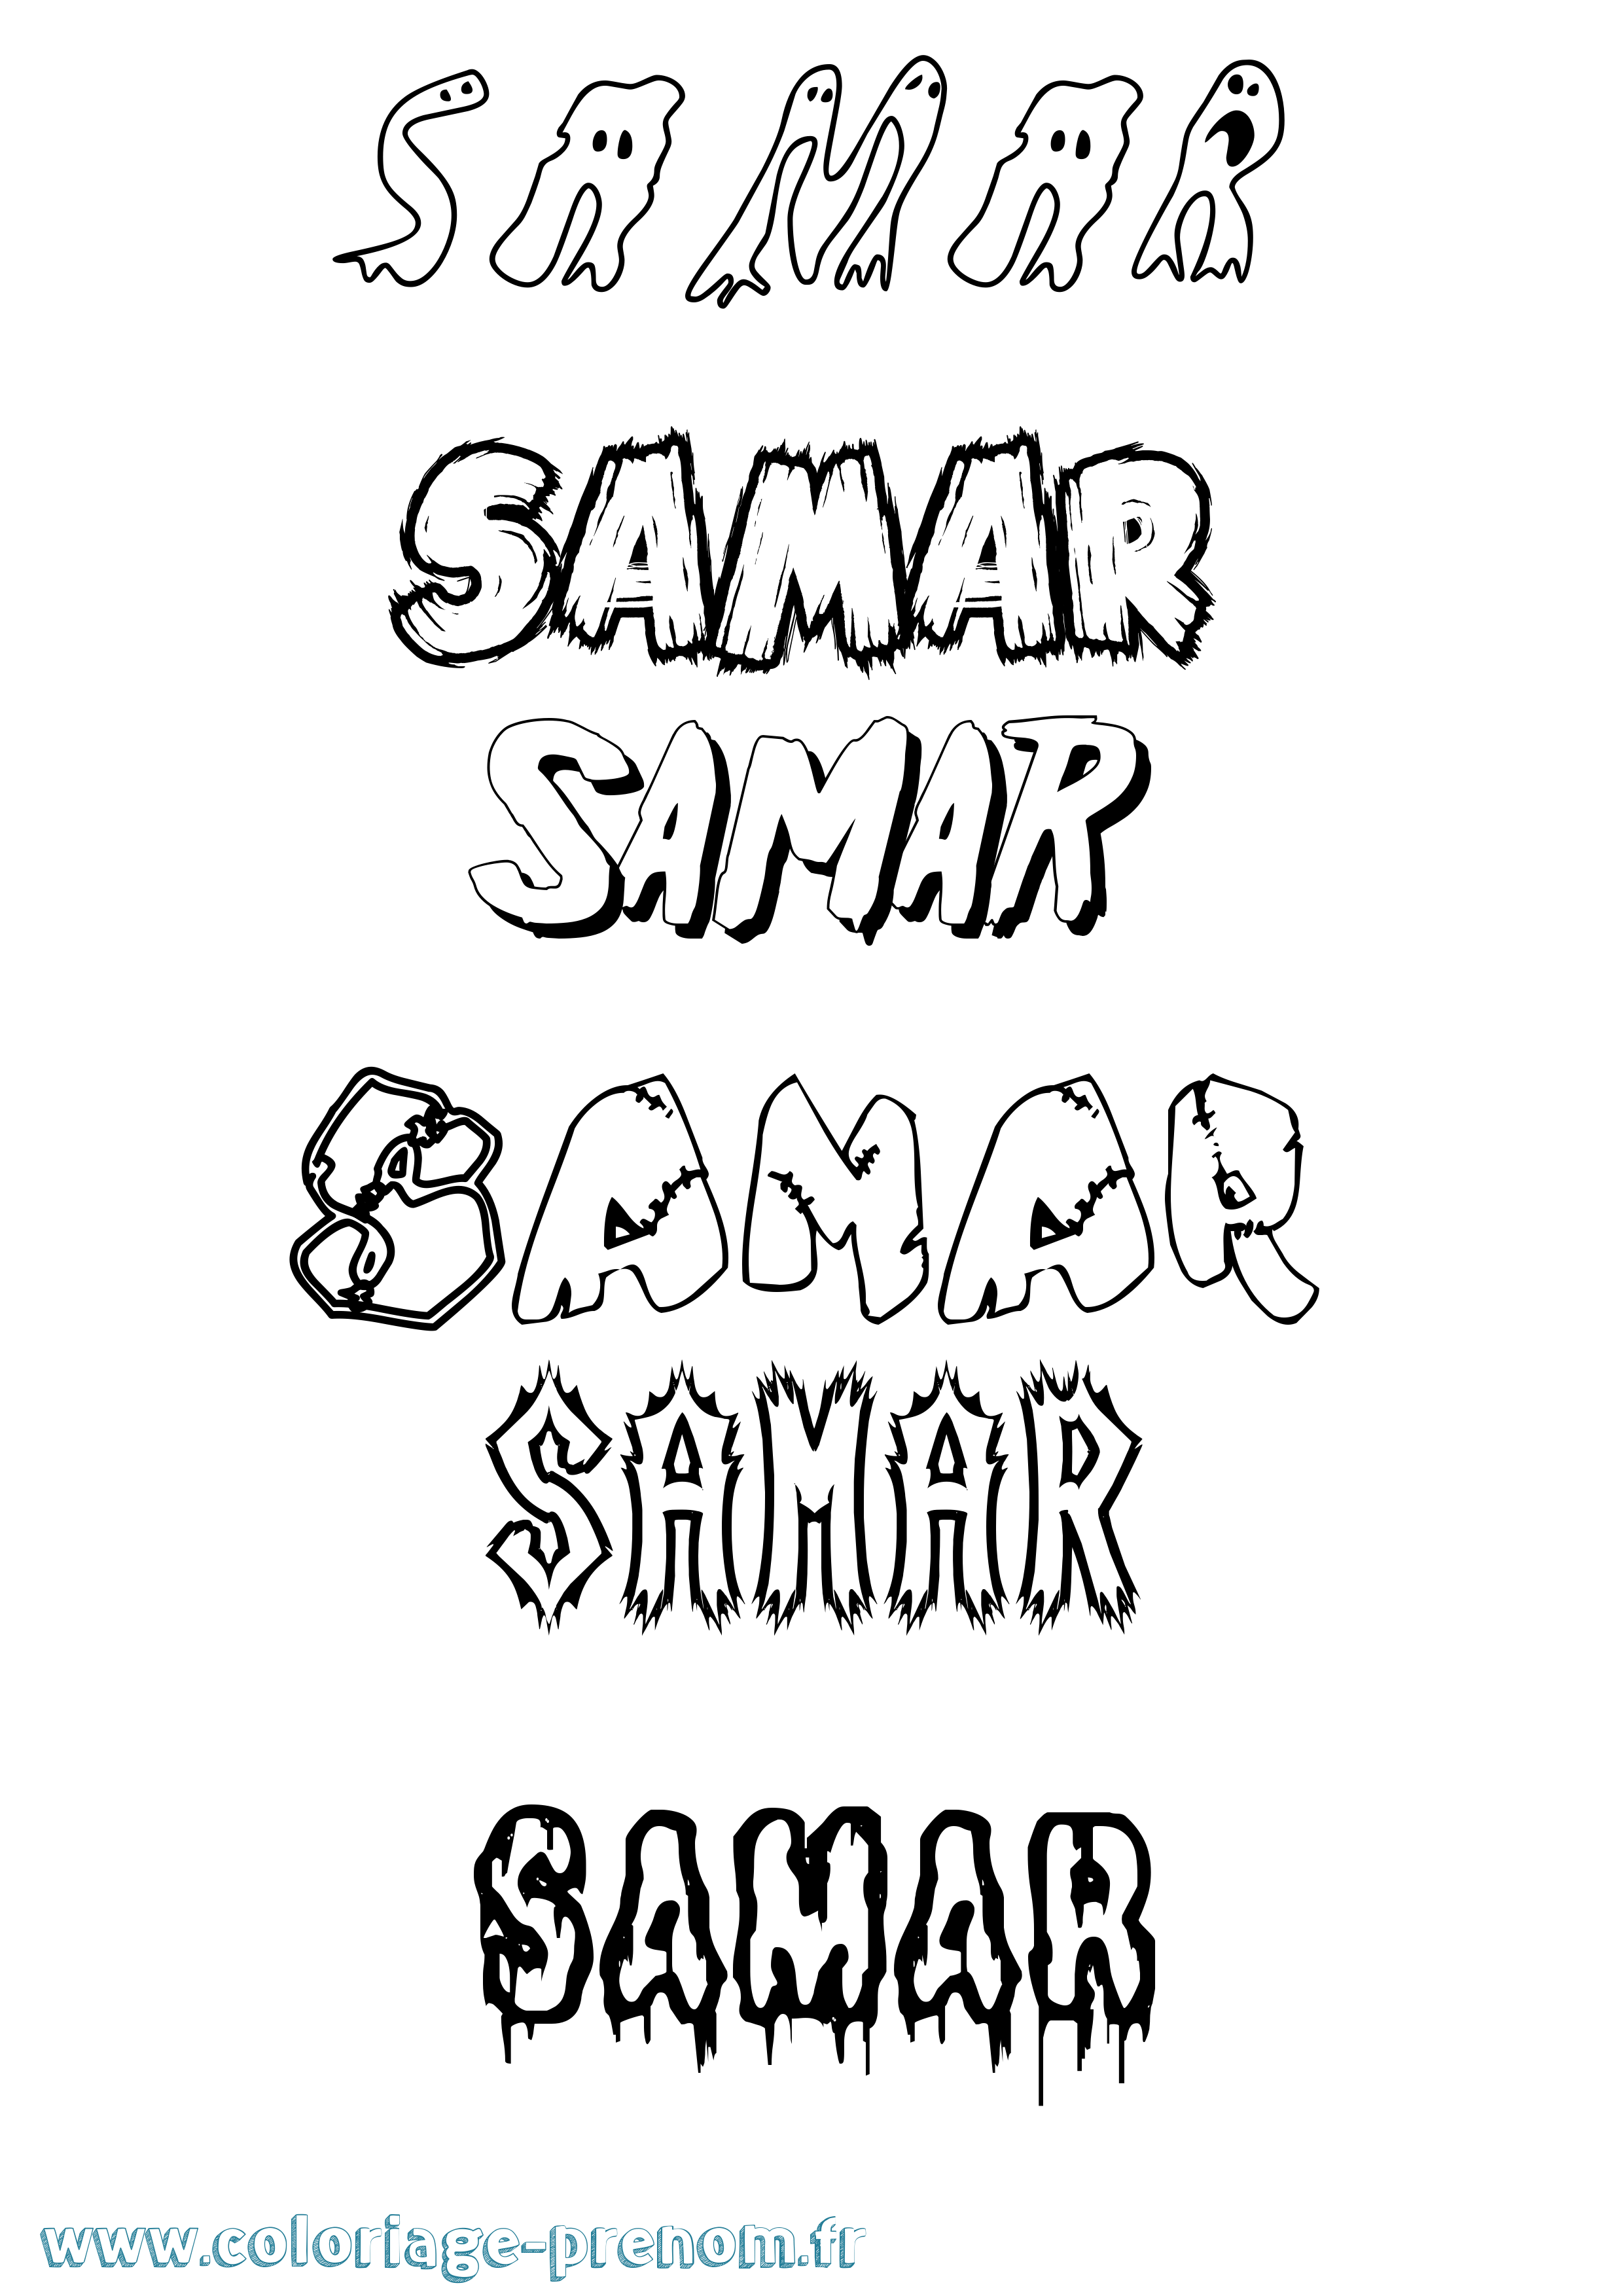 Coloriage prénom Samar Frisson